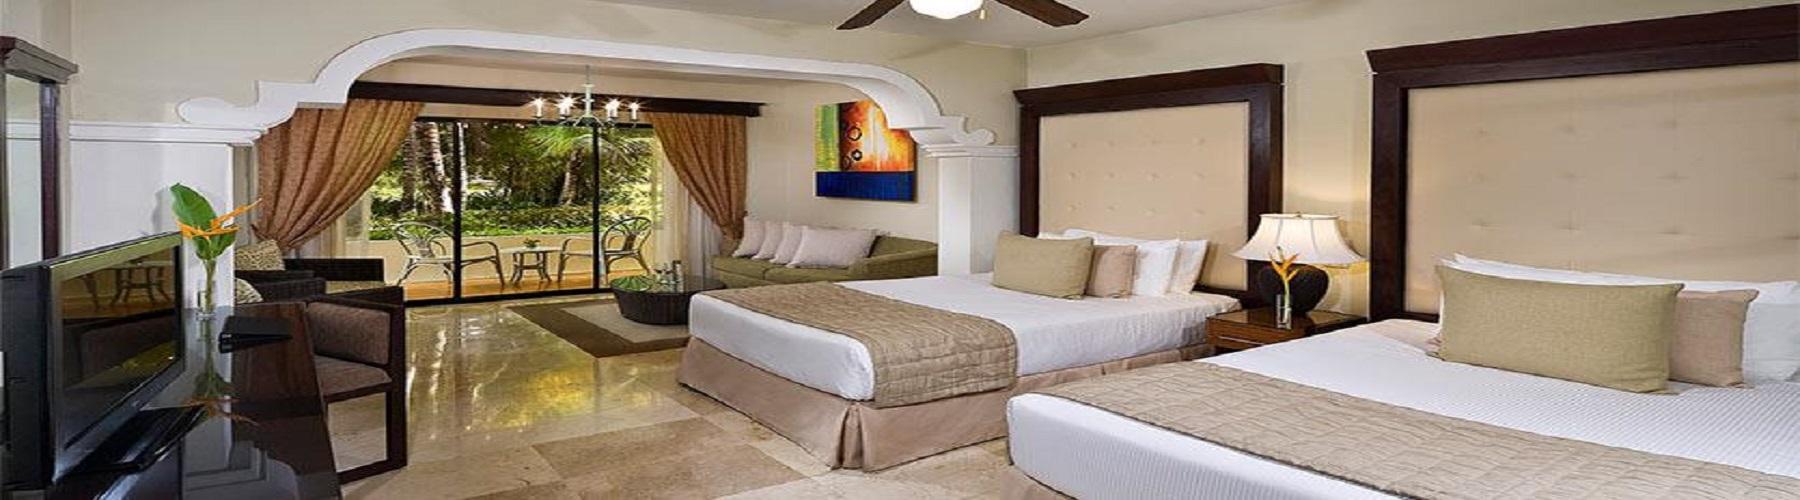 Забронировать номер в отеле Melia Caribe Beach Resort 5*